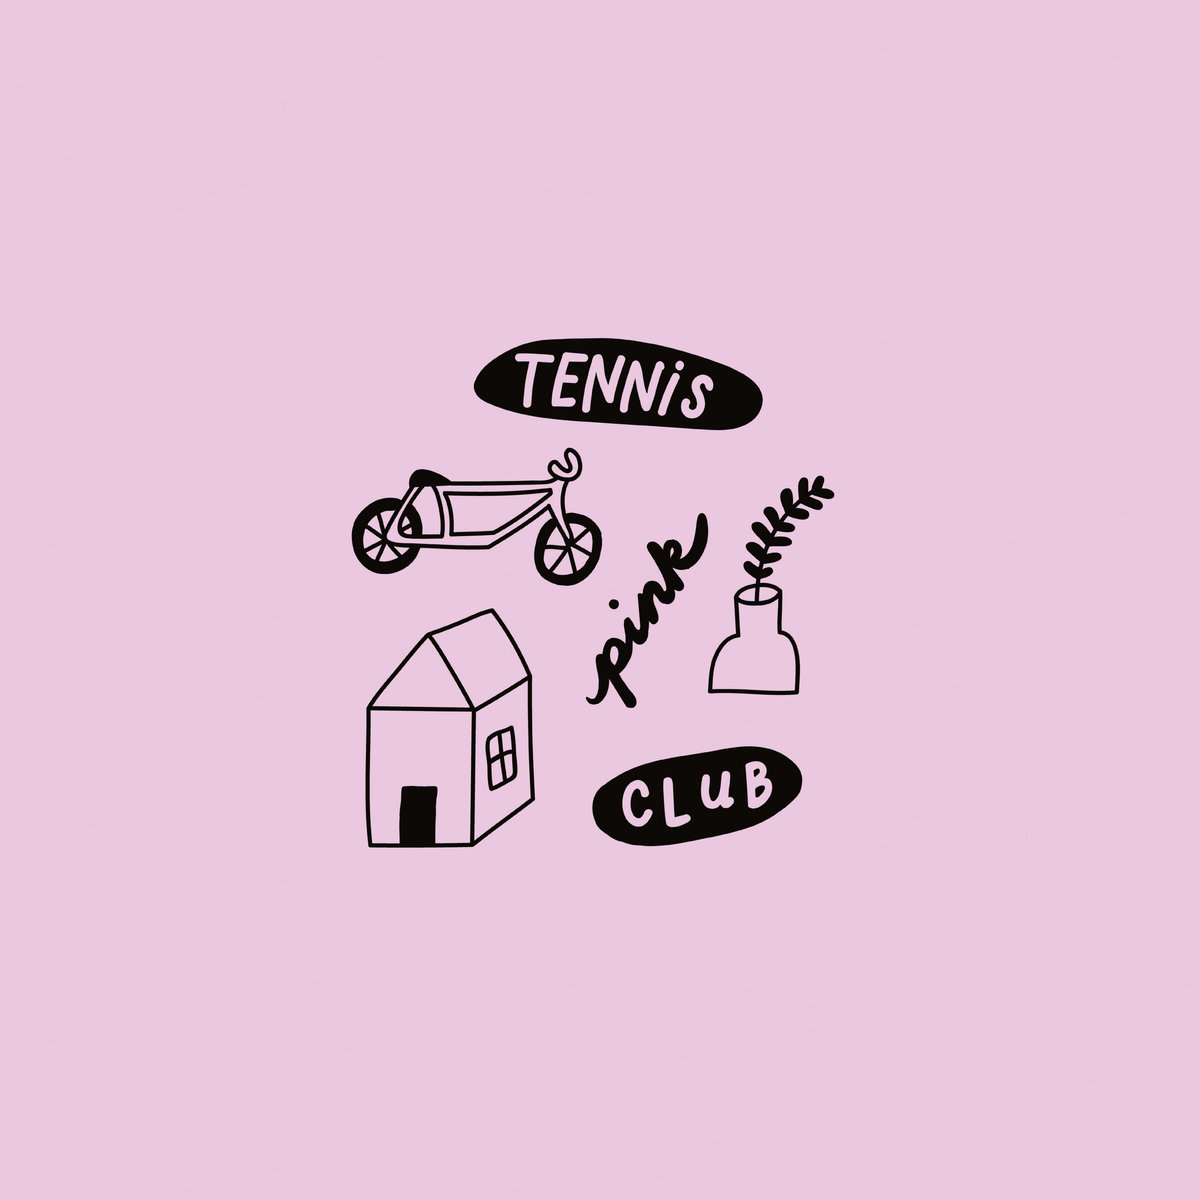 Tennis Club "Pink" Mini LP